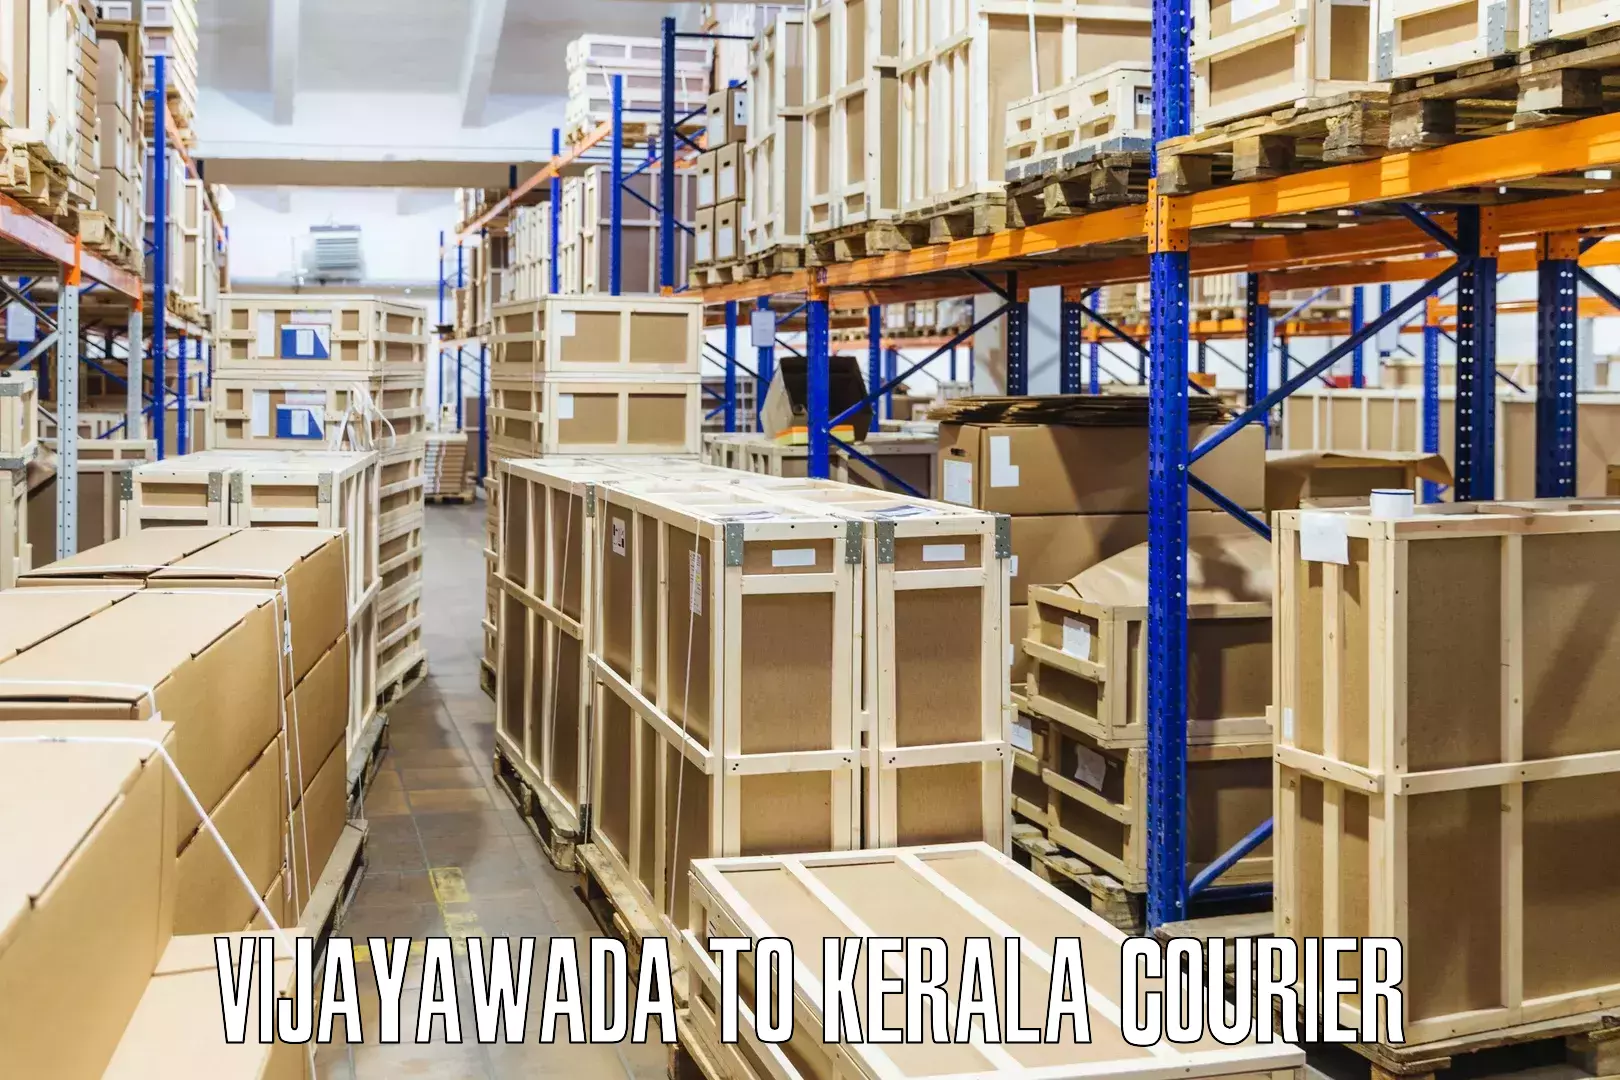 Regular parcel service Vijayawada to Kozhikode